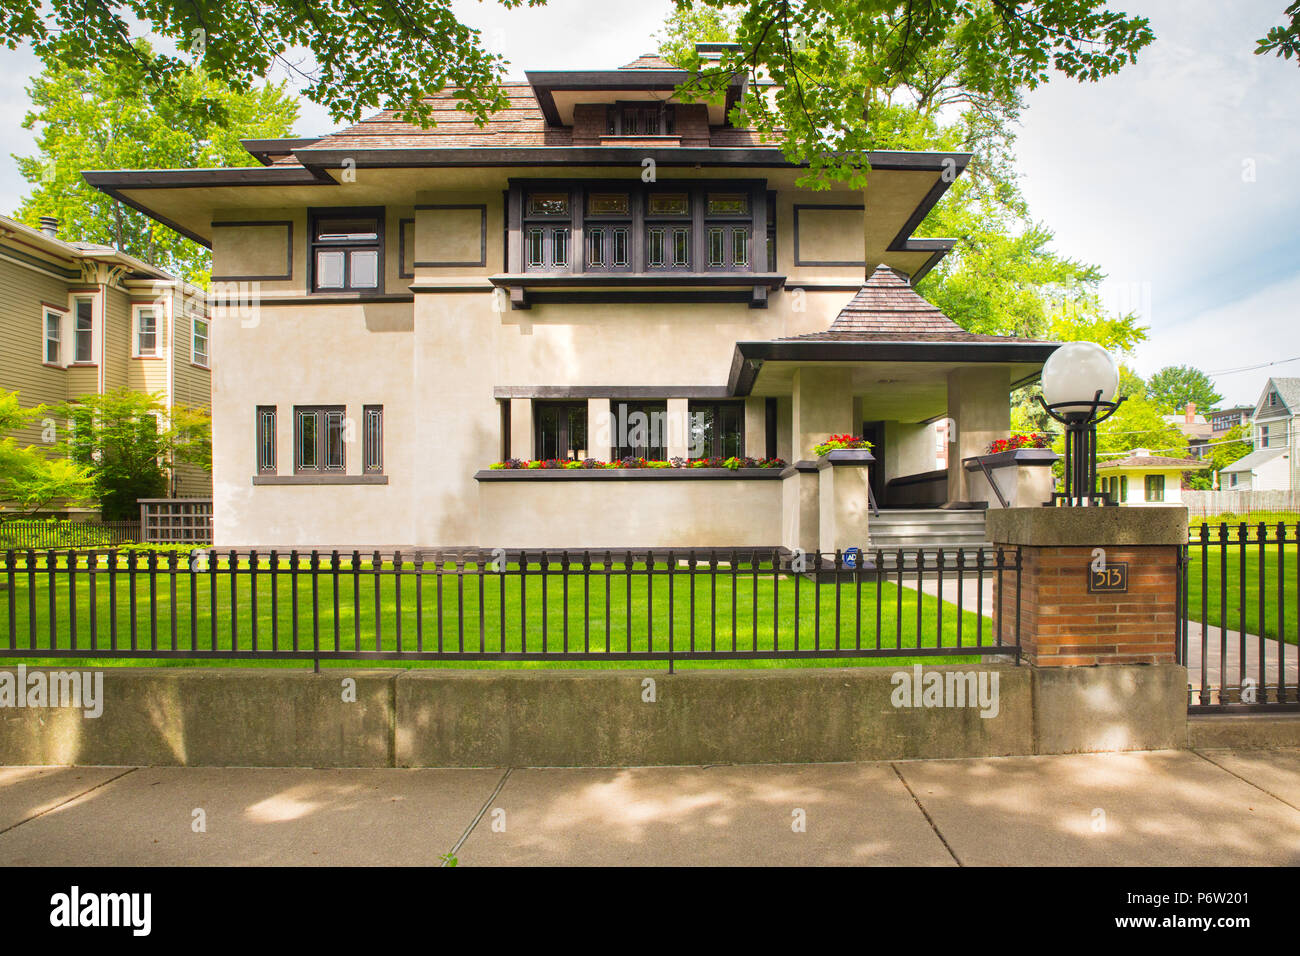 OAK PARK, Illinois - 25. JUNI 2018: Ansicht des Hauses, entworfen vom Architekten Frank Lloyd Wright. Dies ist der Edward R. Hills Haus, aka der Hügel - DeCaro Ho Stockfoto